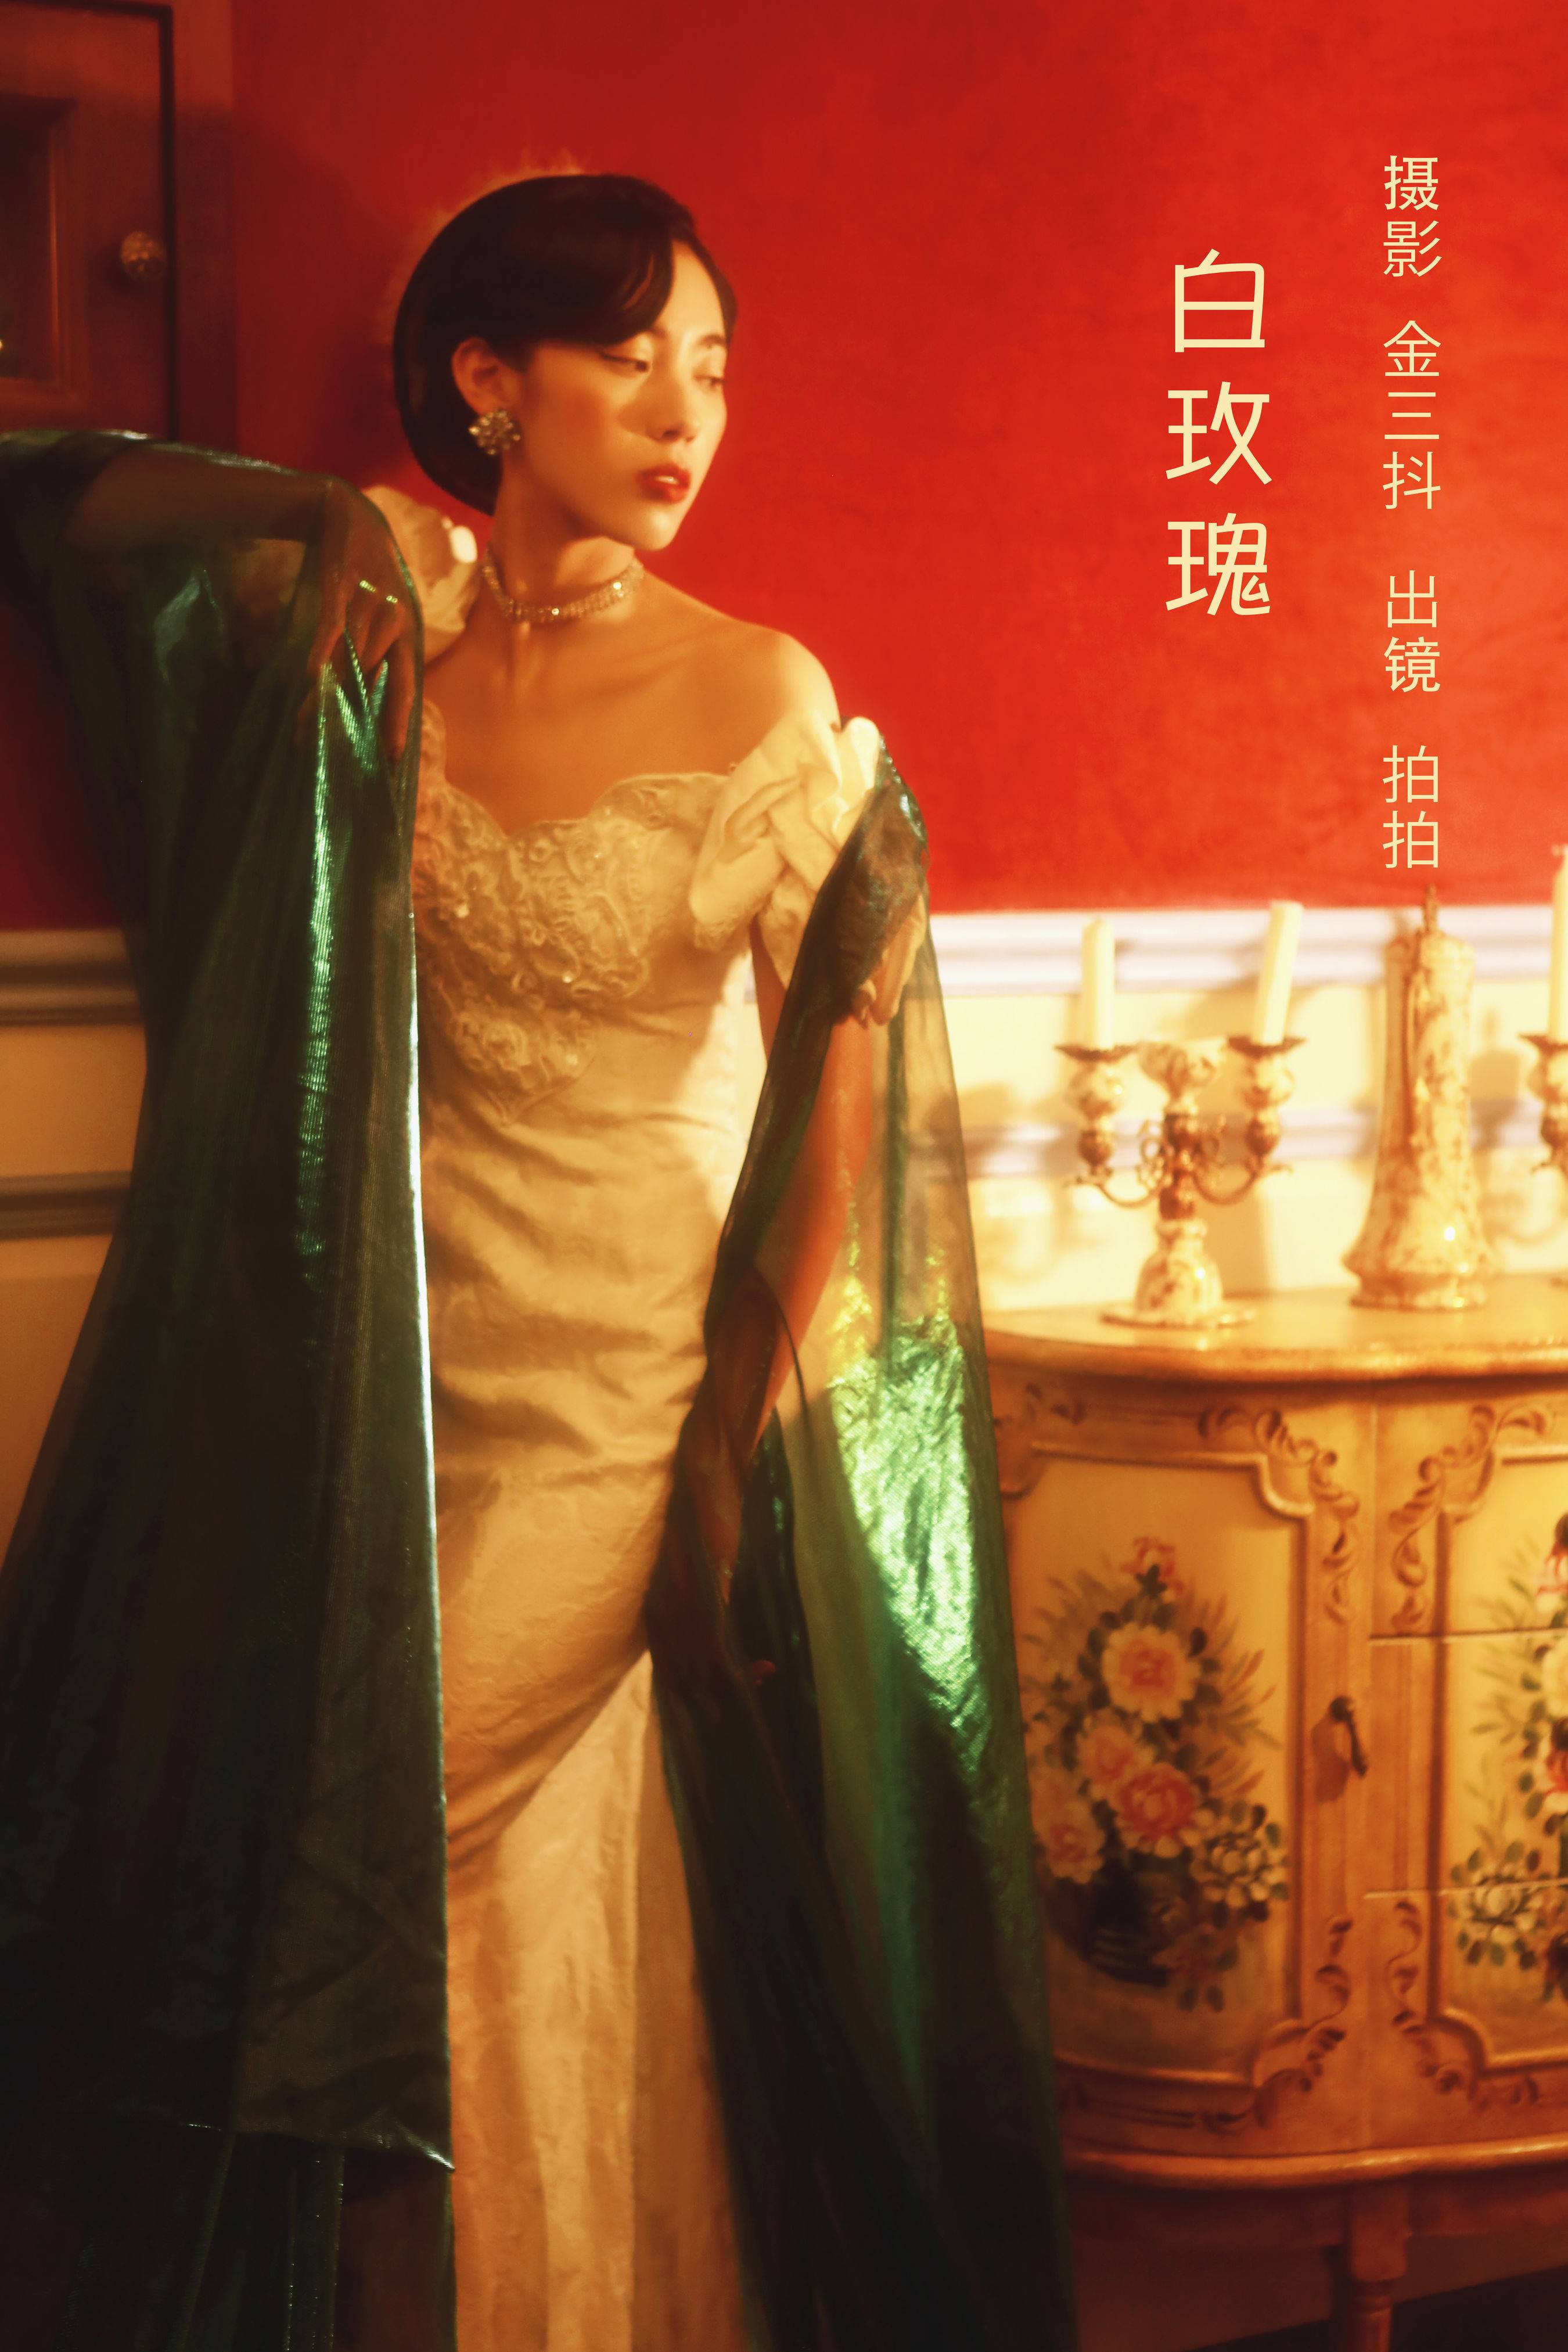 白玫瑰 漂亮 复古 优雅 光影 高雅 欧洲写真艺术&YiTuYu艺图语-1